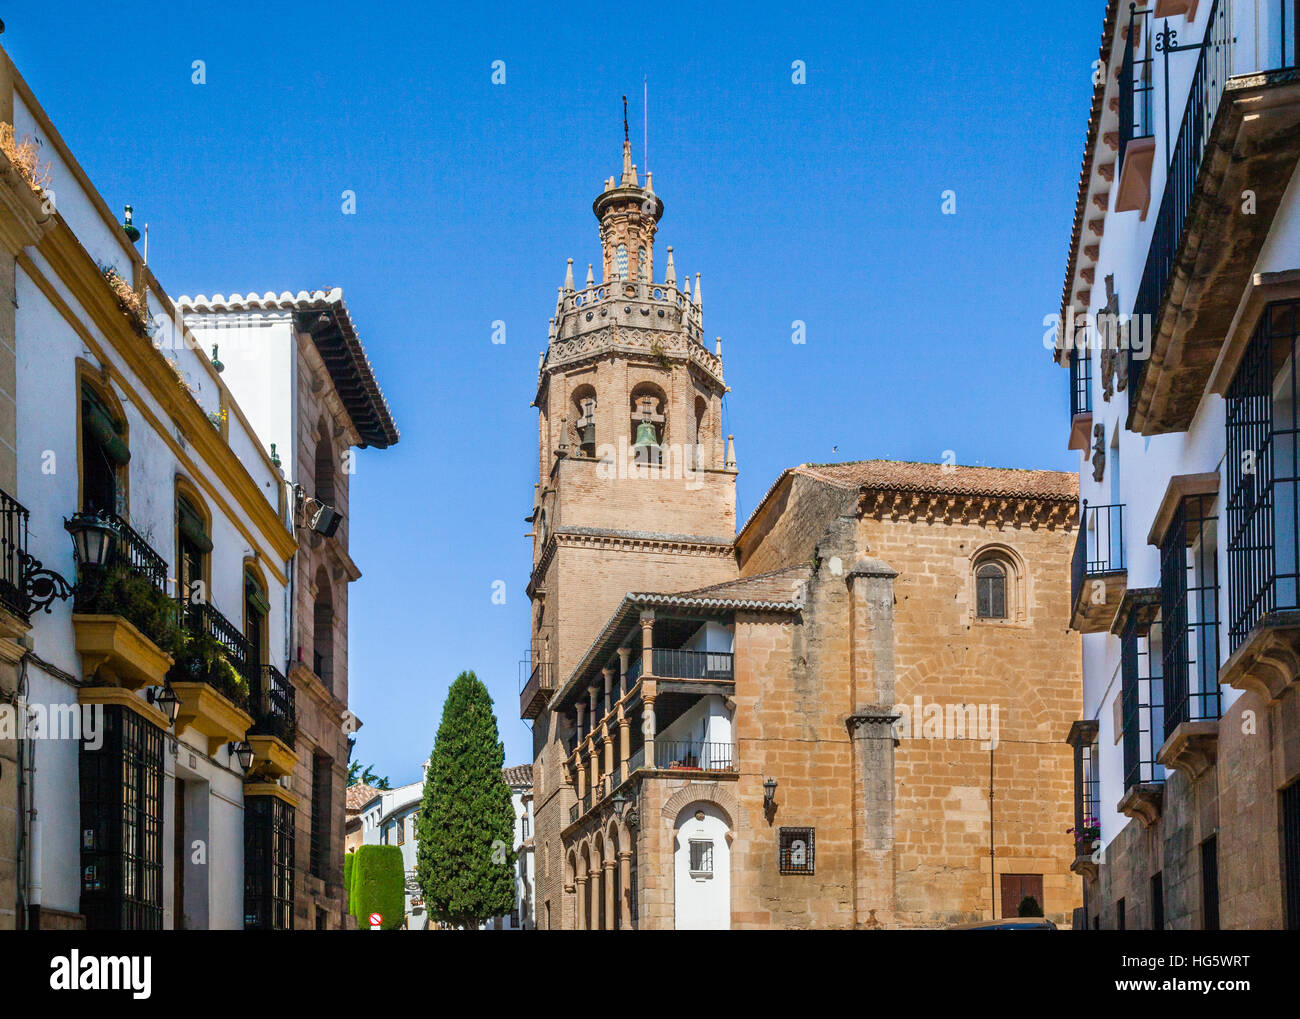 Spanien, Andalusien, Provinz Malaga, Ronda, Kirche von Santa Maria Mayor (Parroquia Santa Maria Mayor), ursprünglich ein 14. Jahrhundert Moschee Stockfoto